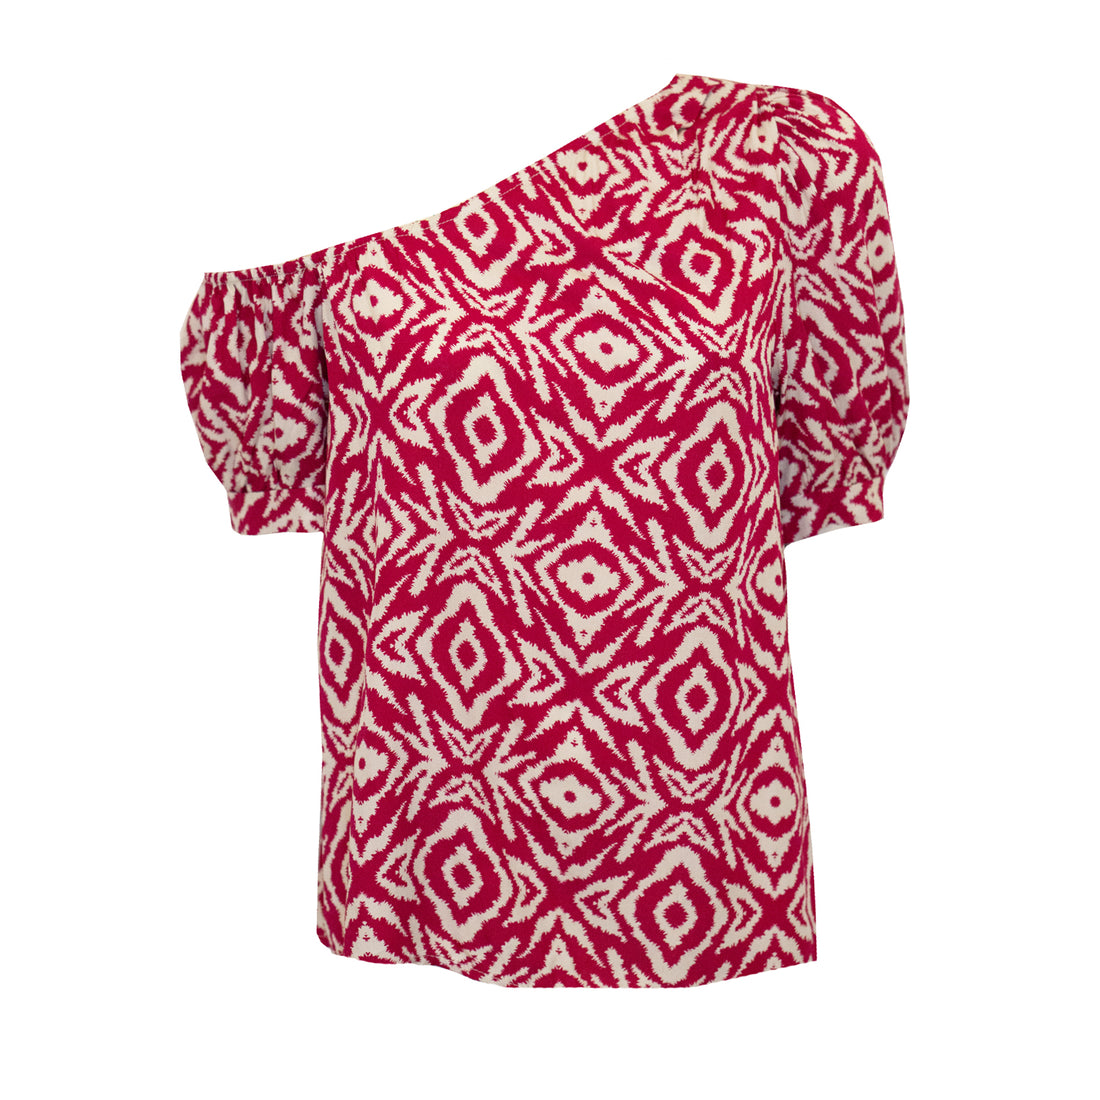 Rood witte one-shoulder top met aztec print. We hebben ook een bijpassende skort in deze print. De top is one-size en geschikt voor de maten XS tot en met L. Materiaal van de top is: 100% viscose